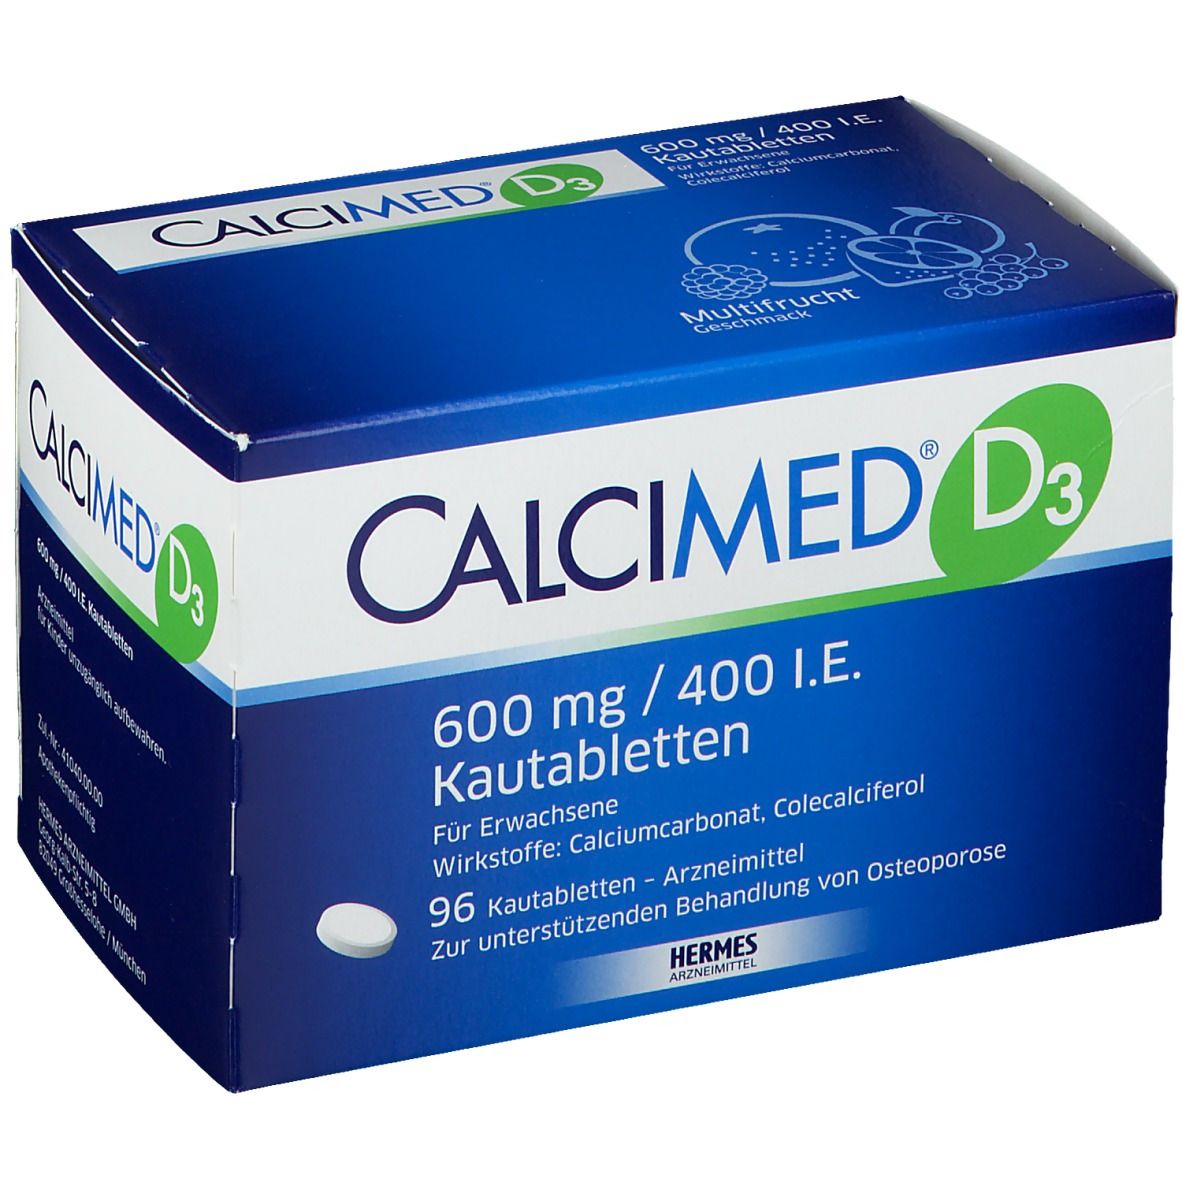 CALCIMED® D3 600 mg/400 I.E. Kautabletten